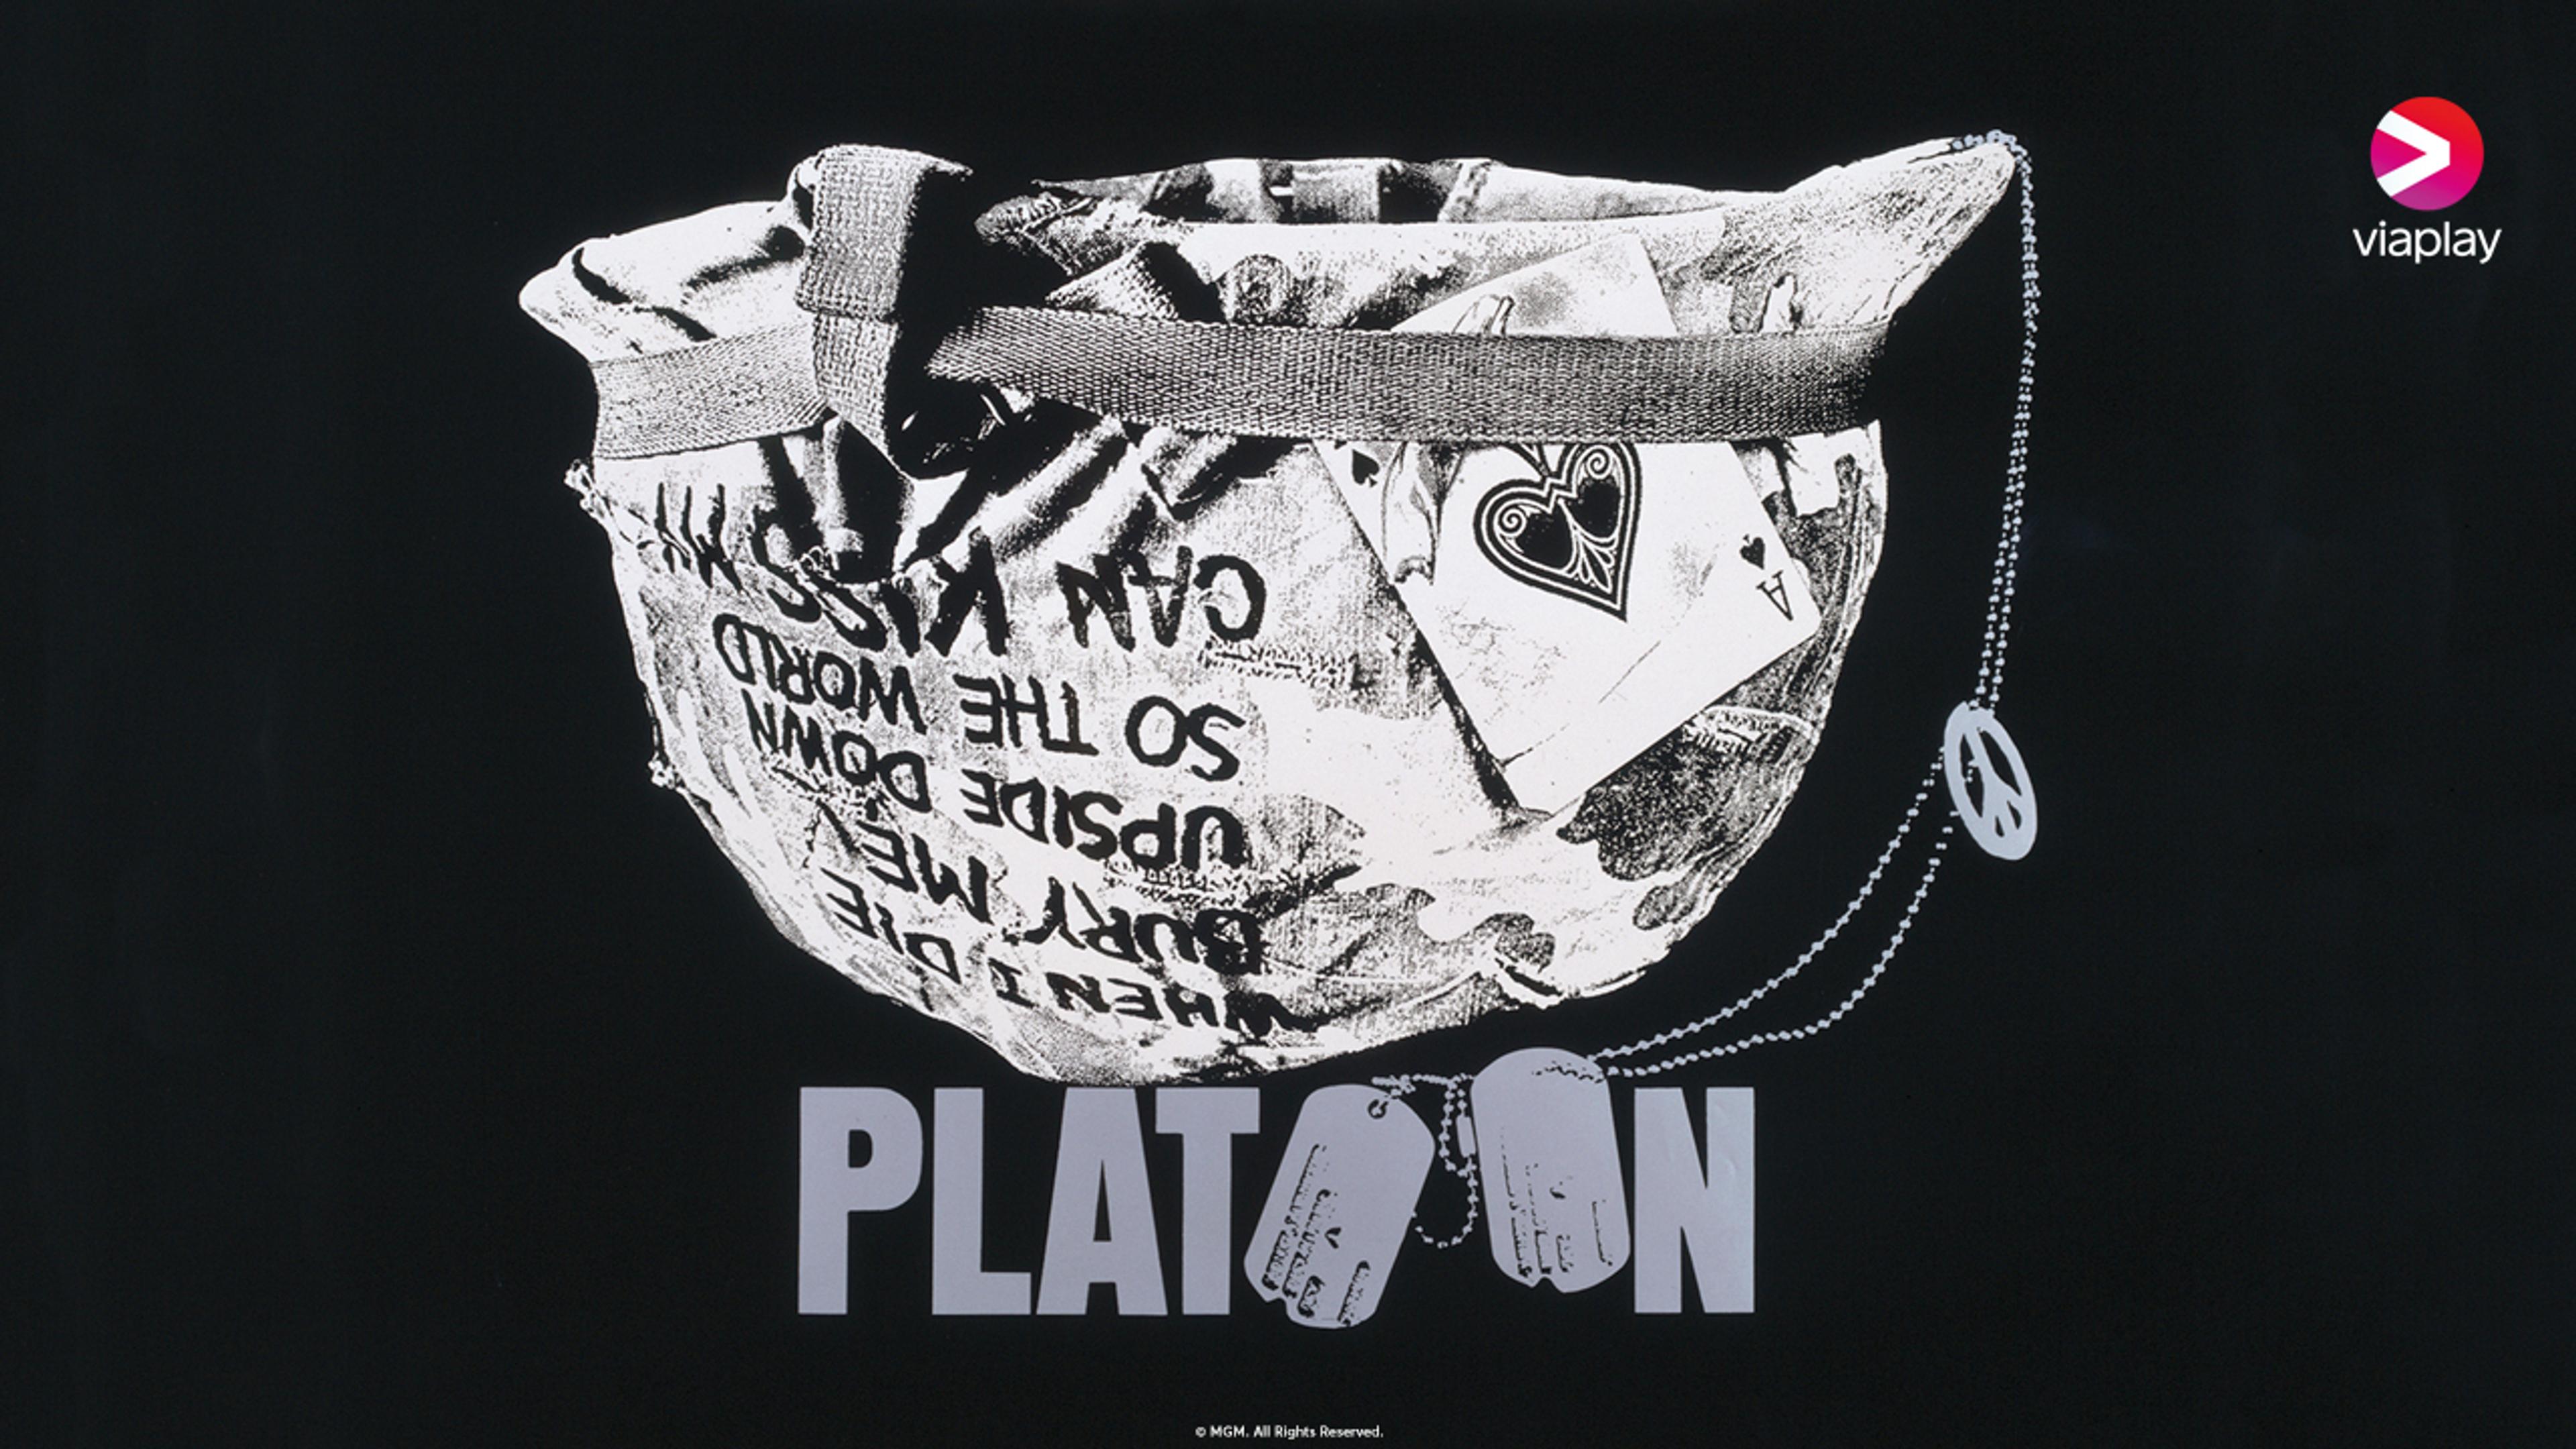 En illustrasjon av en hjelm fra vietnamkrigen ligger opp ned med ordet Platoon under.